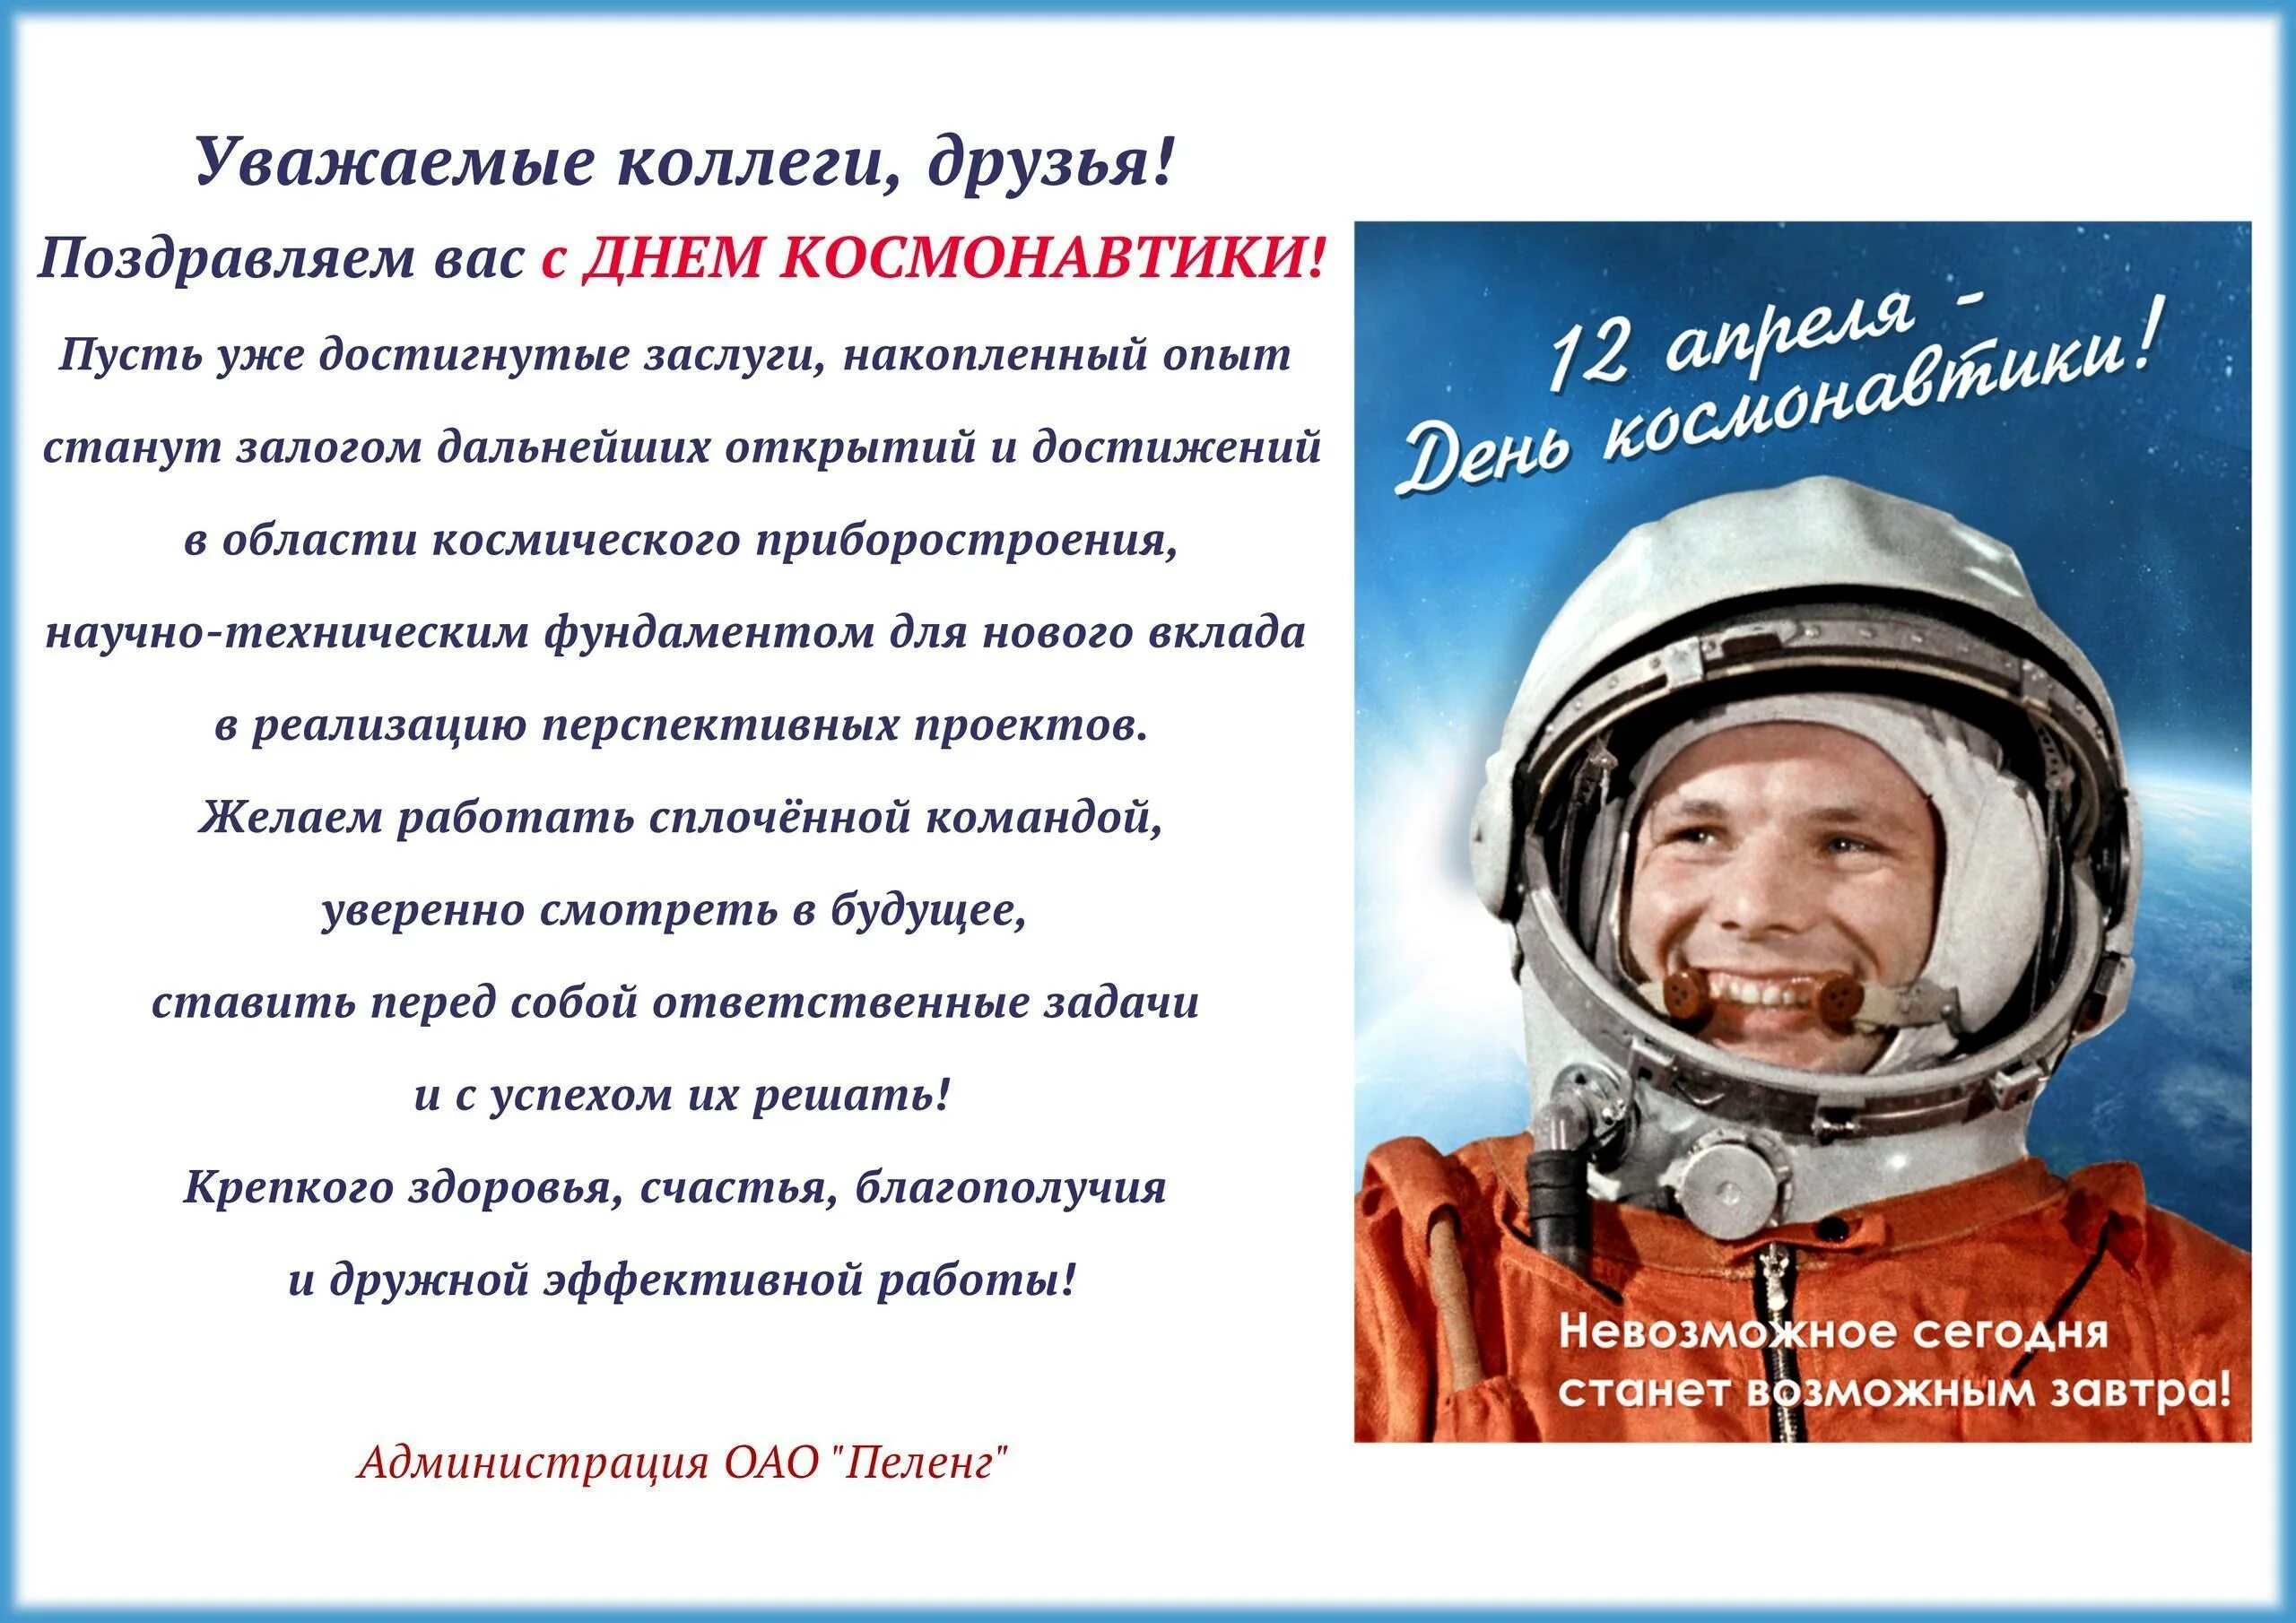 С днем космонавтики поздравление. С днем космонавтики пожелания. С днем космонавтики открытки. Поздравление с днем космонавтики в прозе.